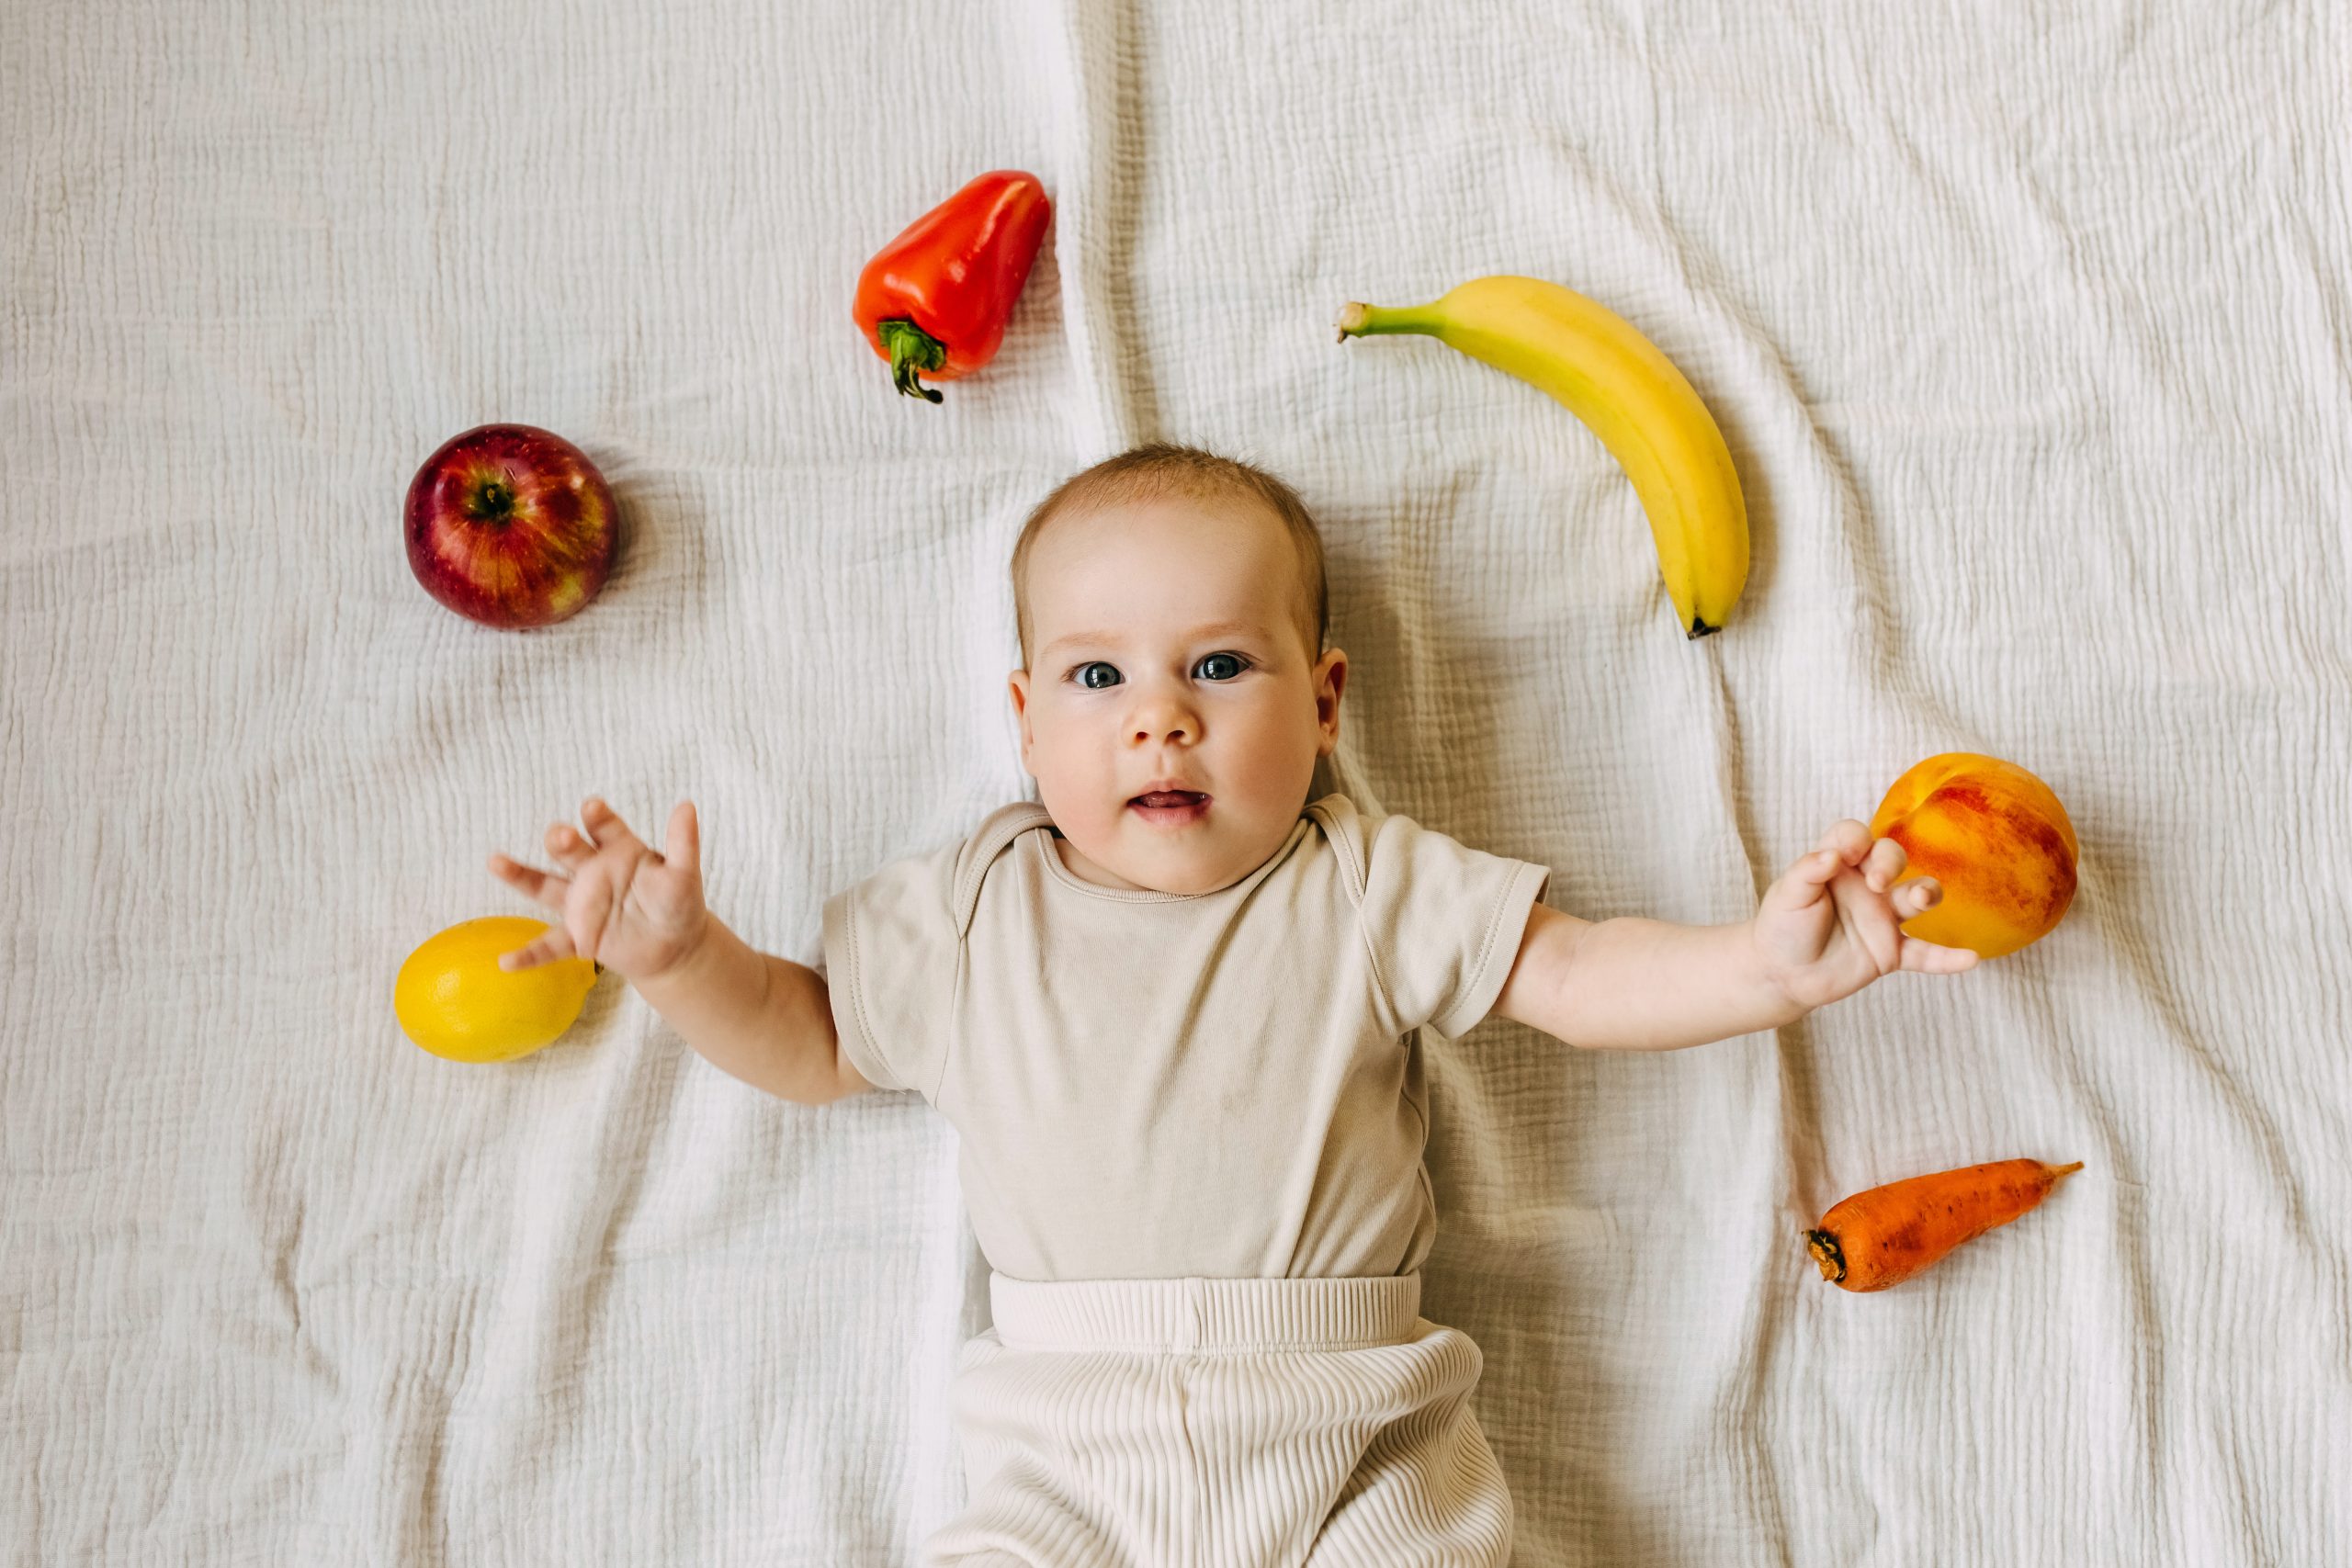 L'alimentation des enfants de 3 à 10 ans : les bons réflexes